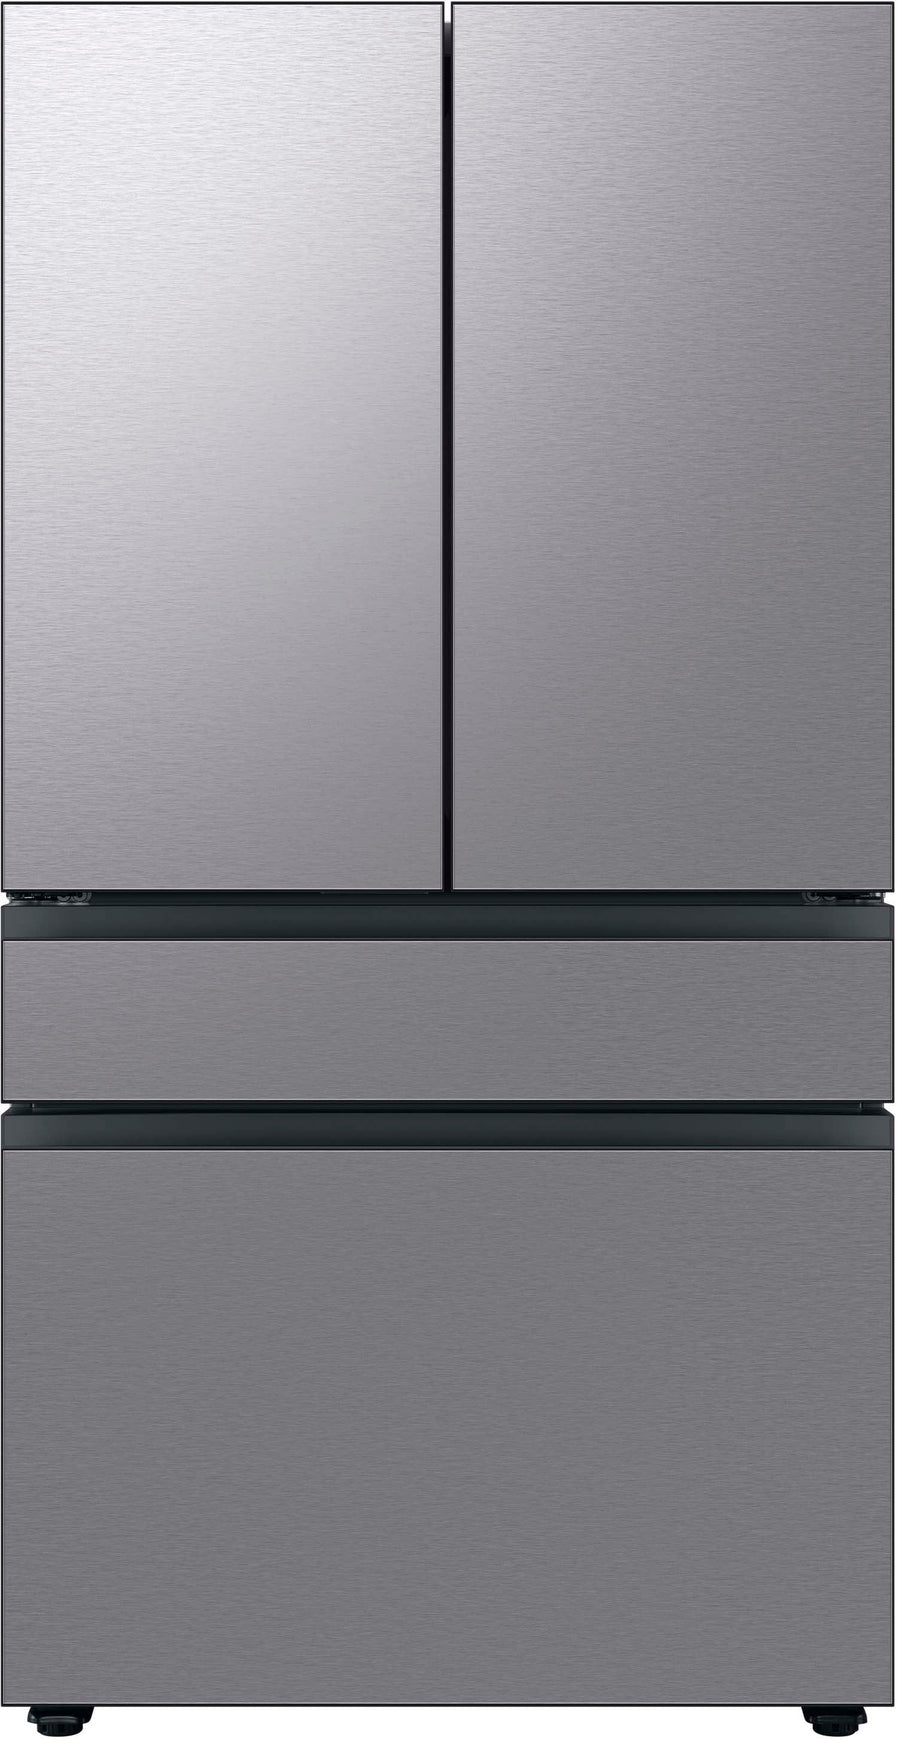 Samsung - Bespoke 29 cu. ft 4-Door French Door Refrigerator with Beverage Center - Stainless steel_0